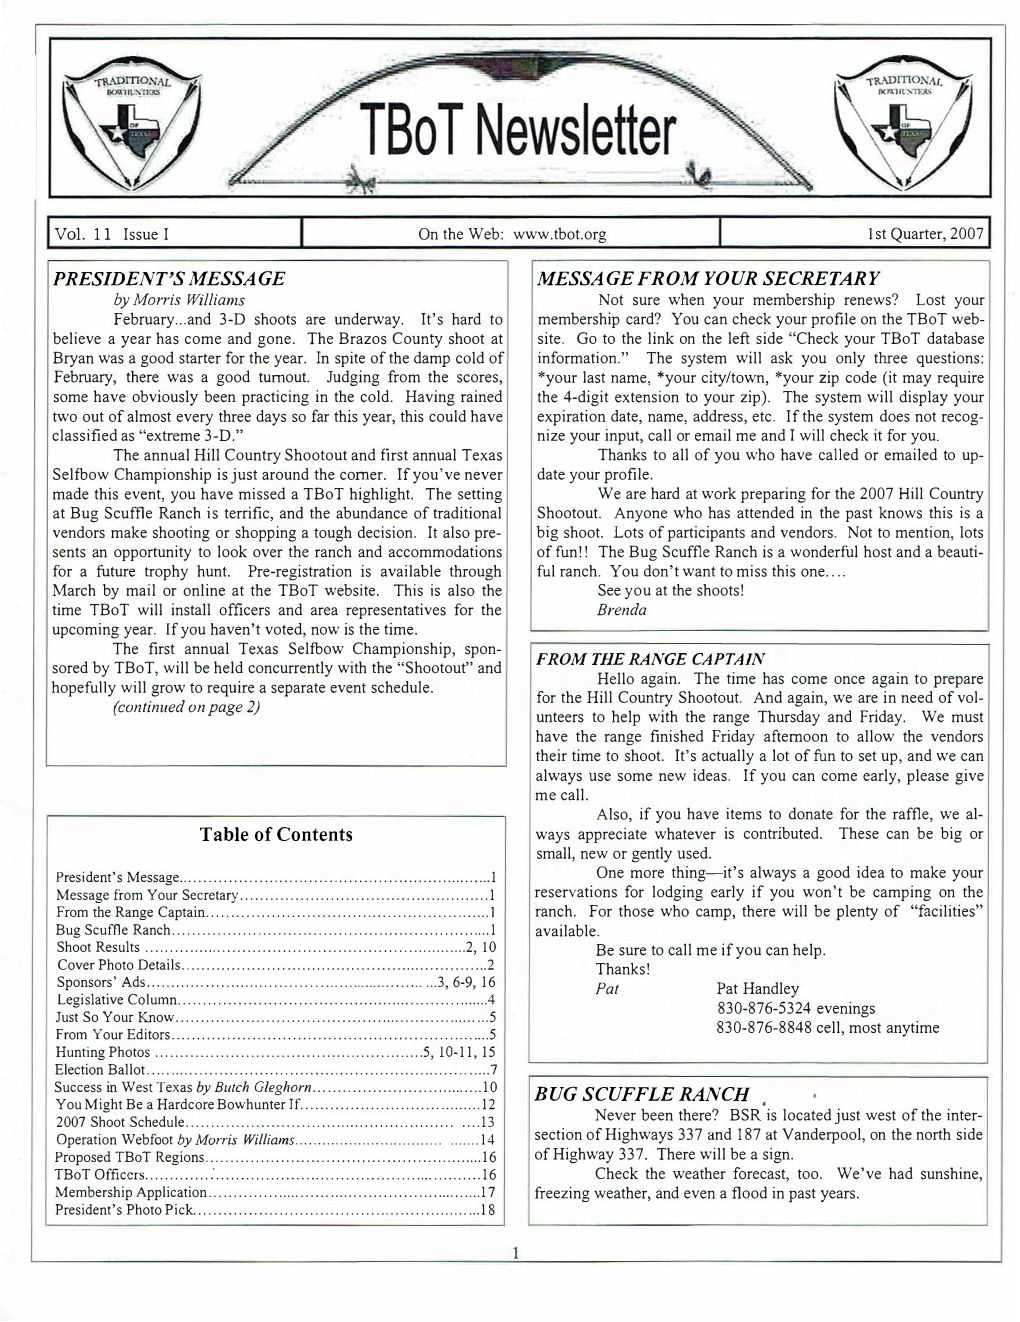 Q1 2007 Newsletter